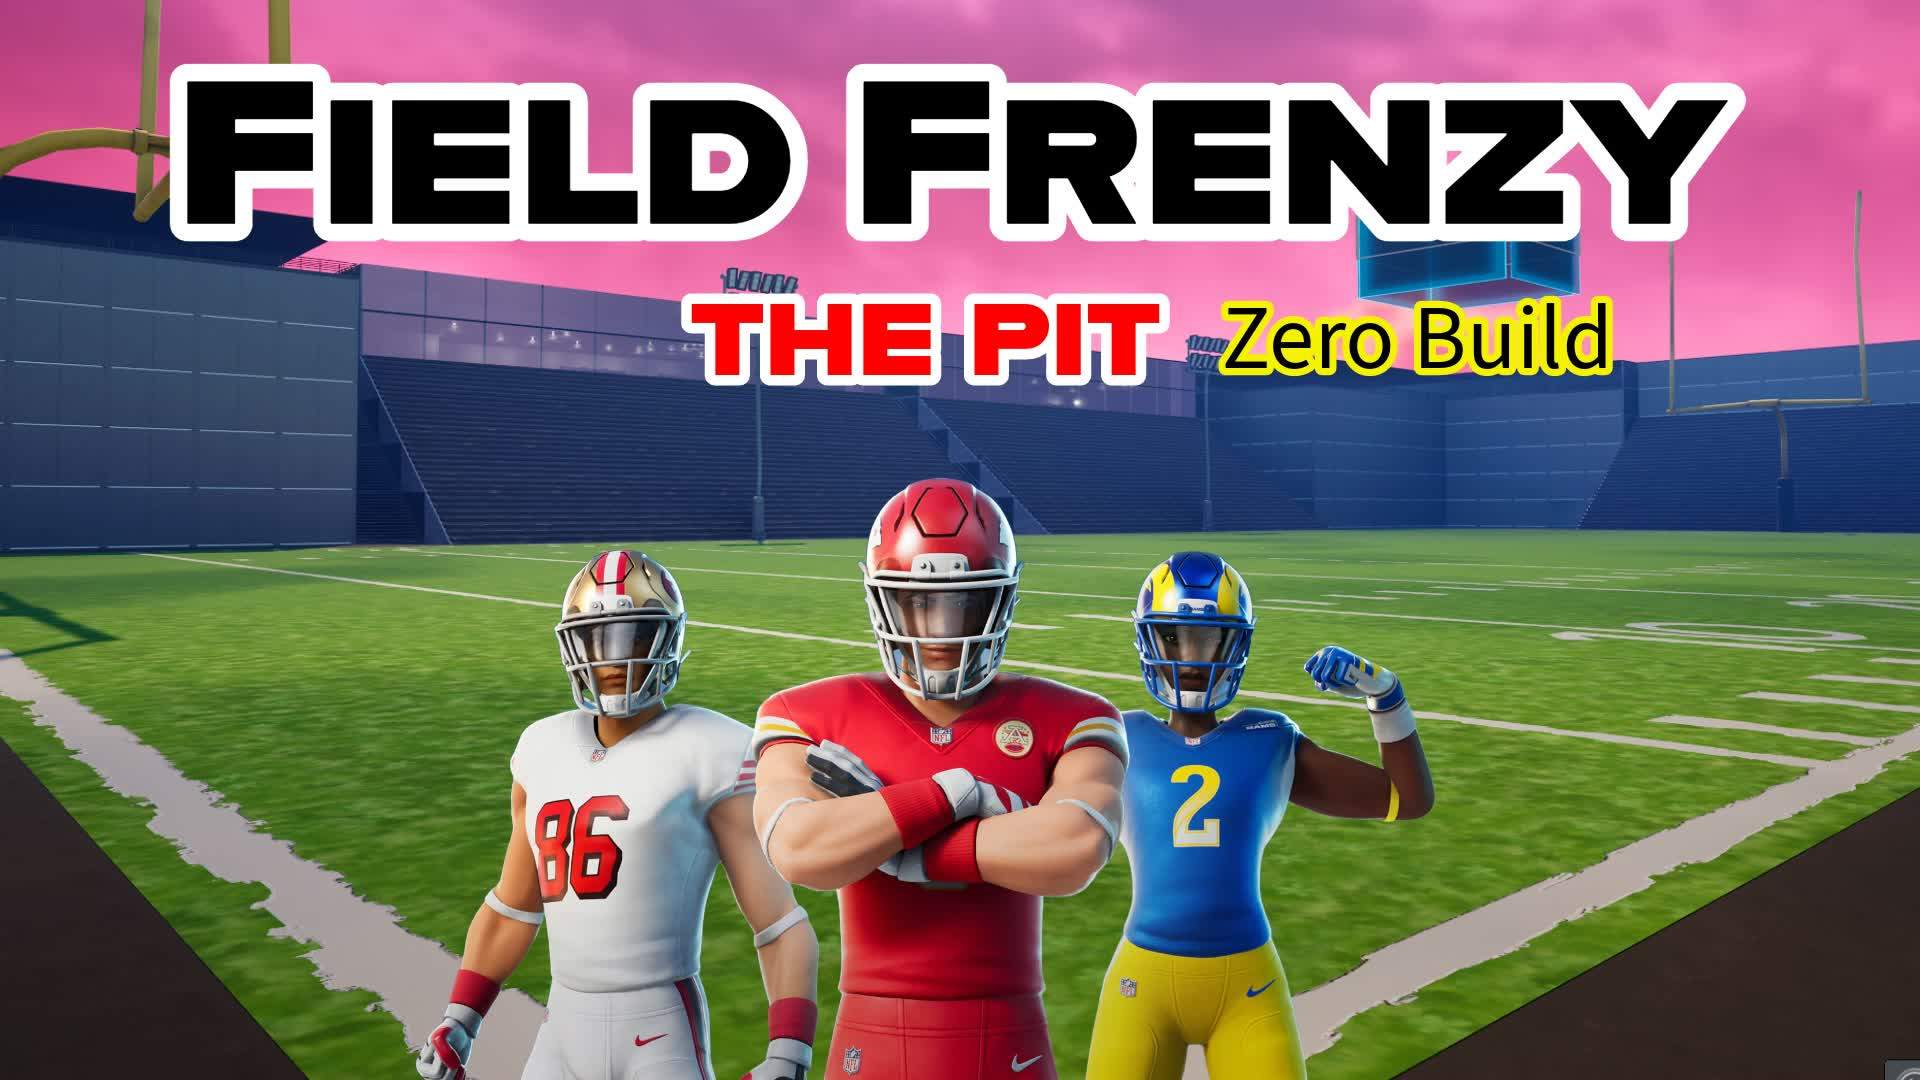 Field Frenzy - The Pit - Zero Build 4384-7301-7179